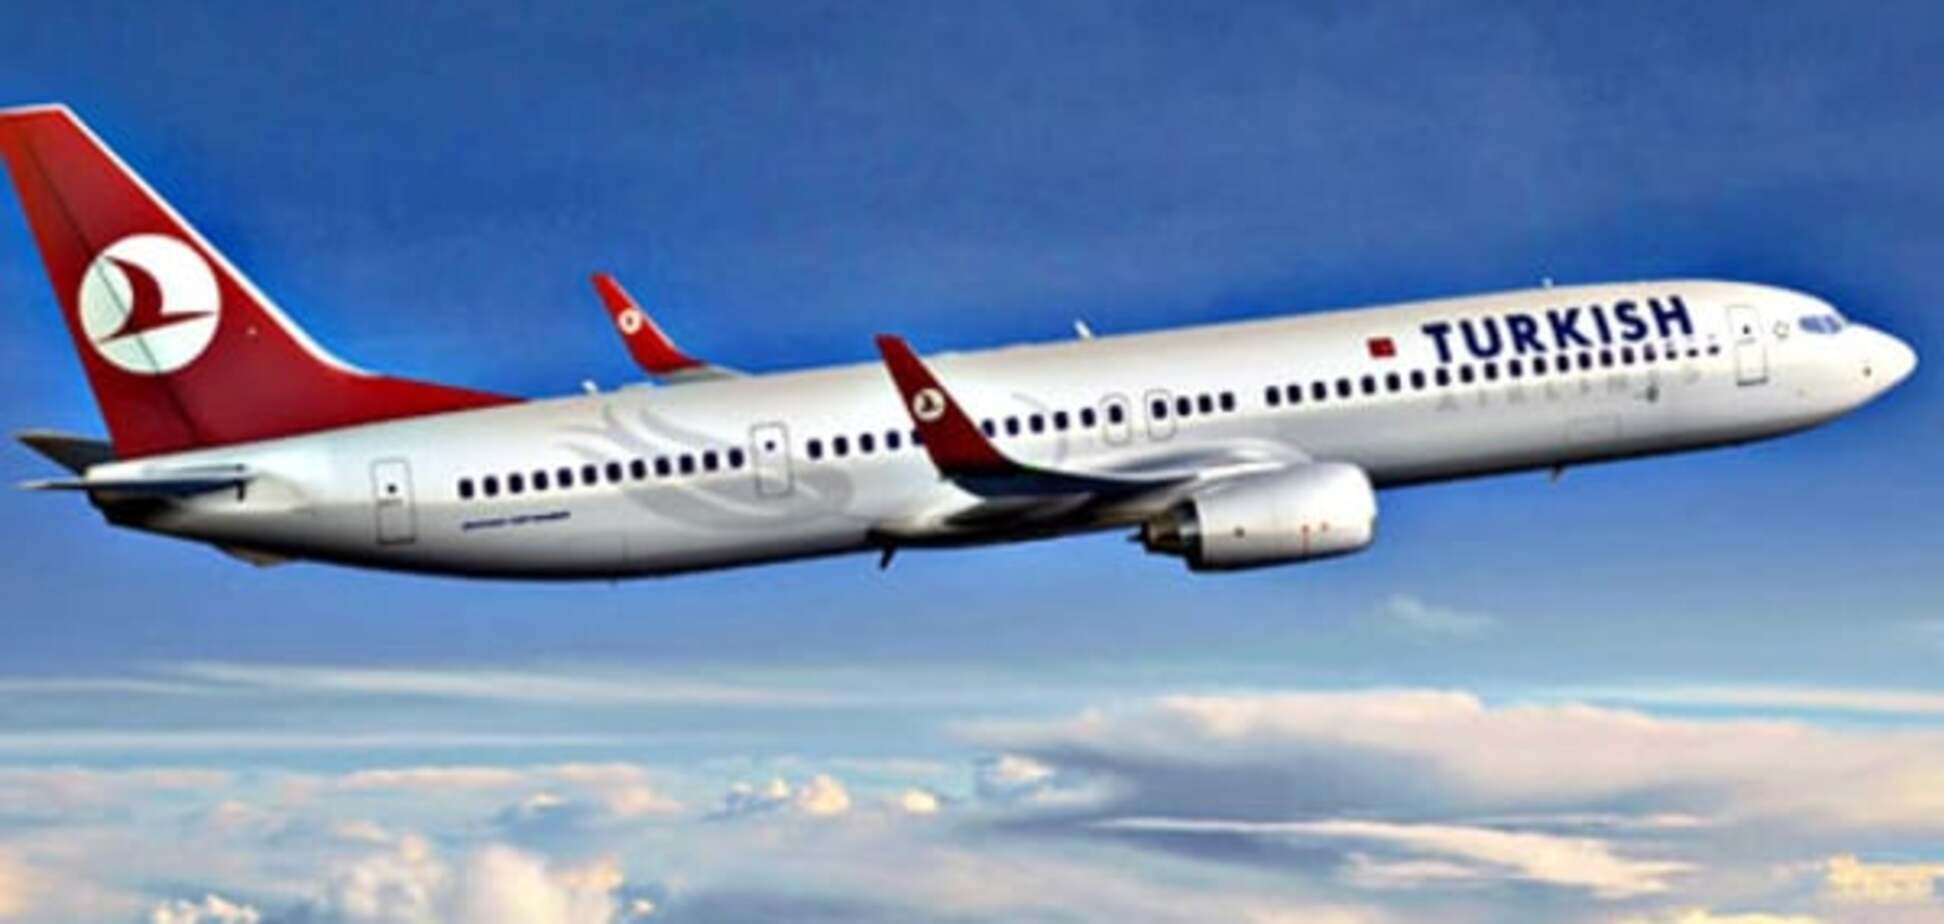 Угроза взрыва: турецкий самолет экстренно приземлился в Канаде